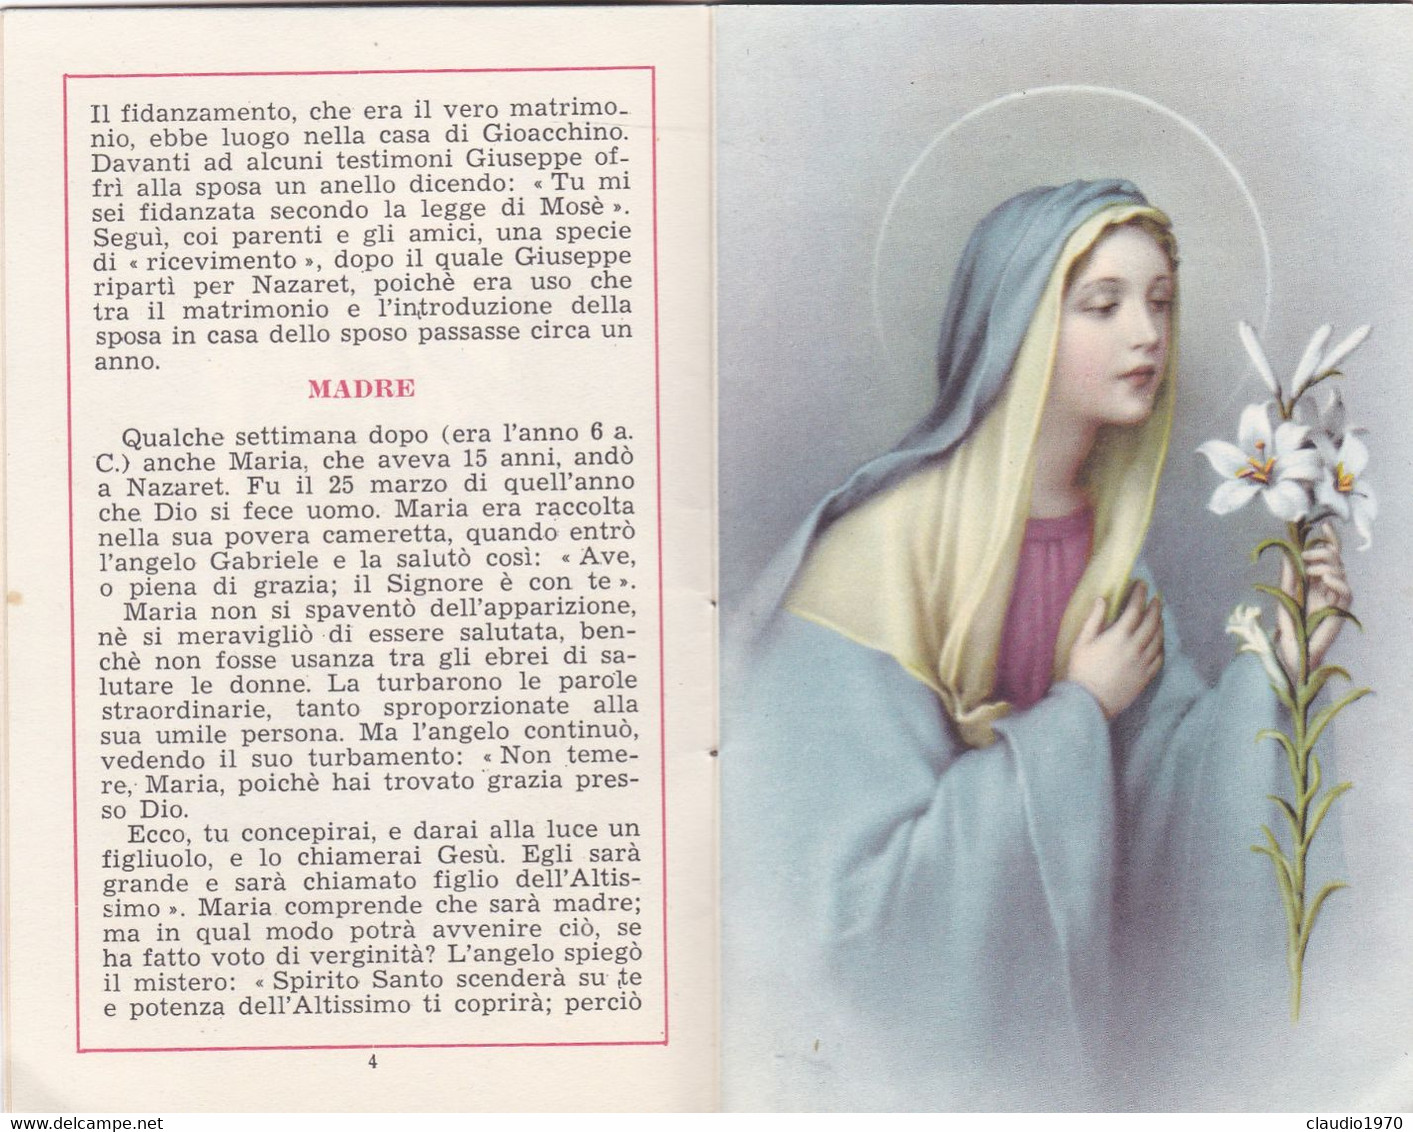 LIBRETTO - LA MADONNA  - LA VOCE DI S. RITA - N.8 - 20 APERILE 1956 - IL PIU GRANDE SANTUARIO IN ONORE DI S. RITA ALLA B - Religion